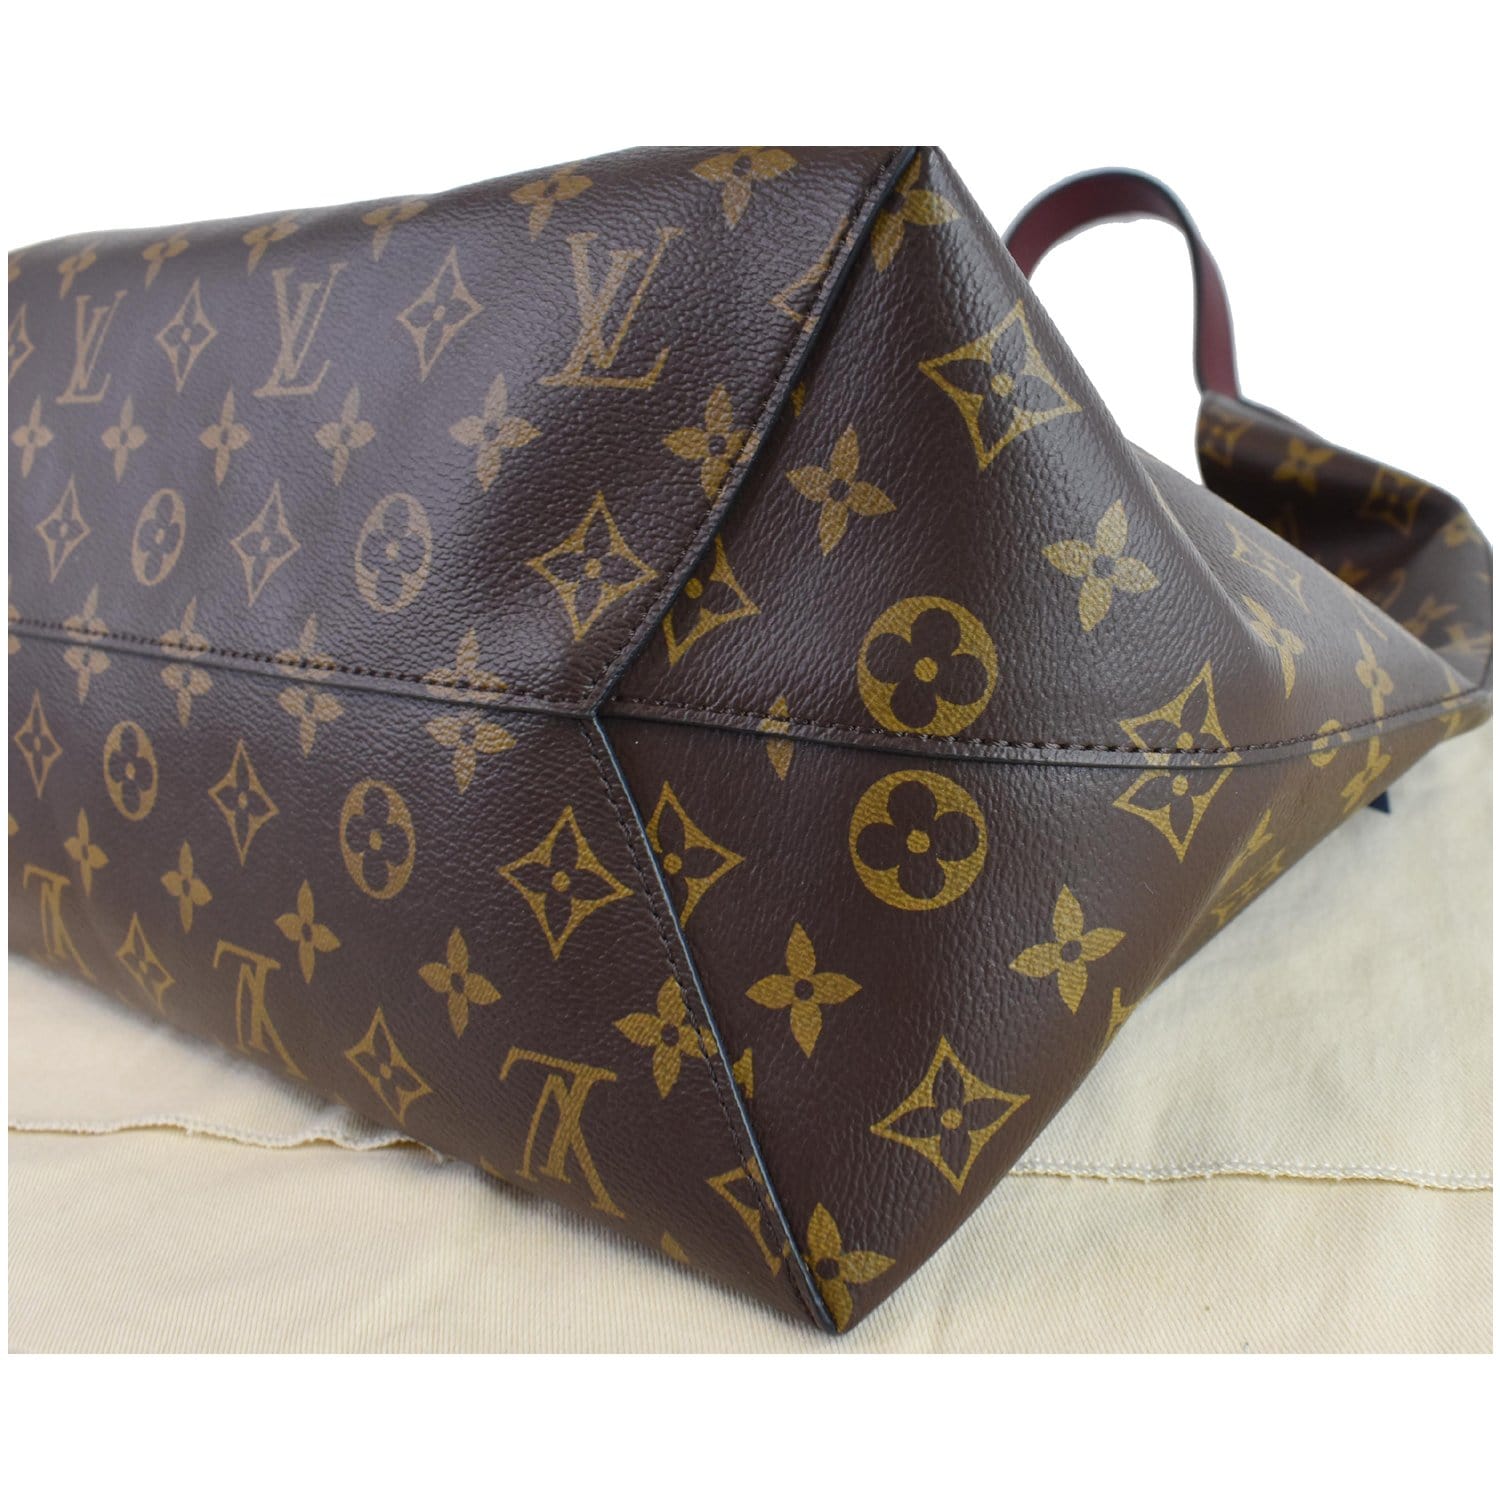 DISCONTINUED ❤️Authentic LV Delightful MM Hobo Shoulder Bag Monogram